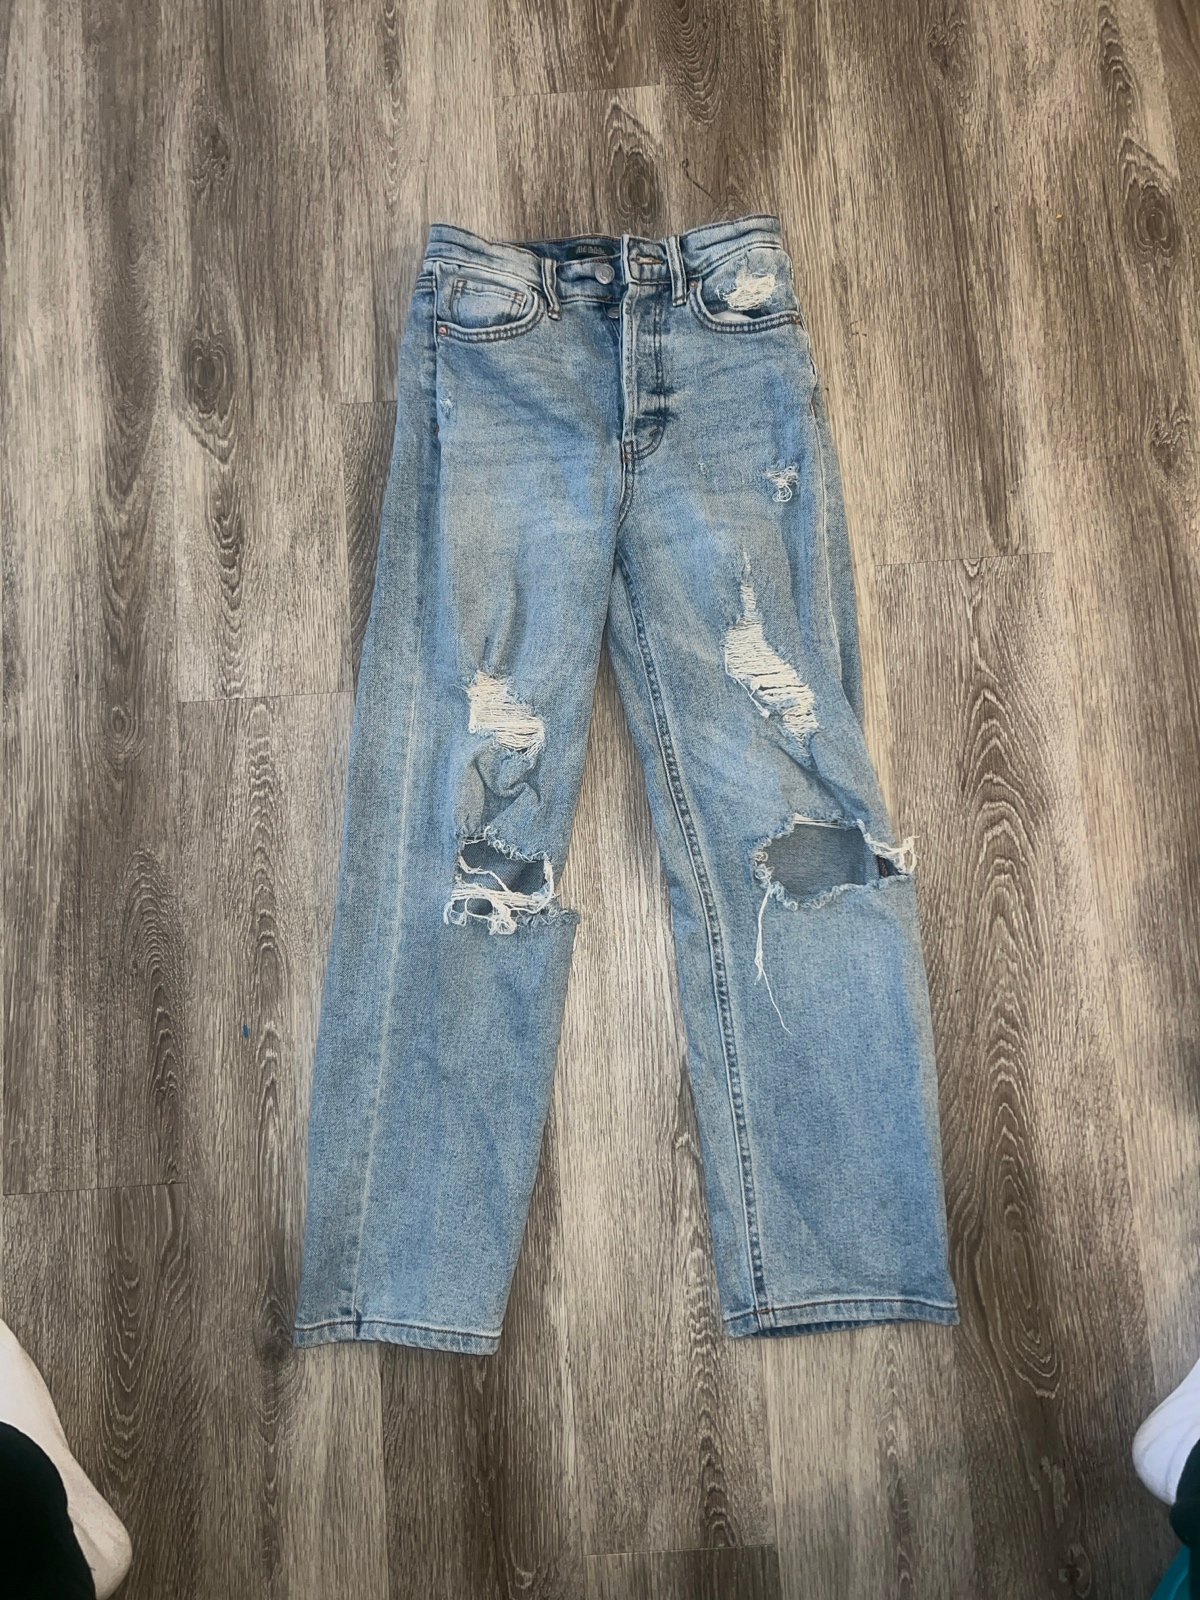 Discounted jeans H2vxtaozu best sale